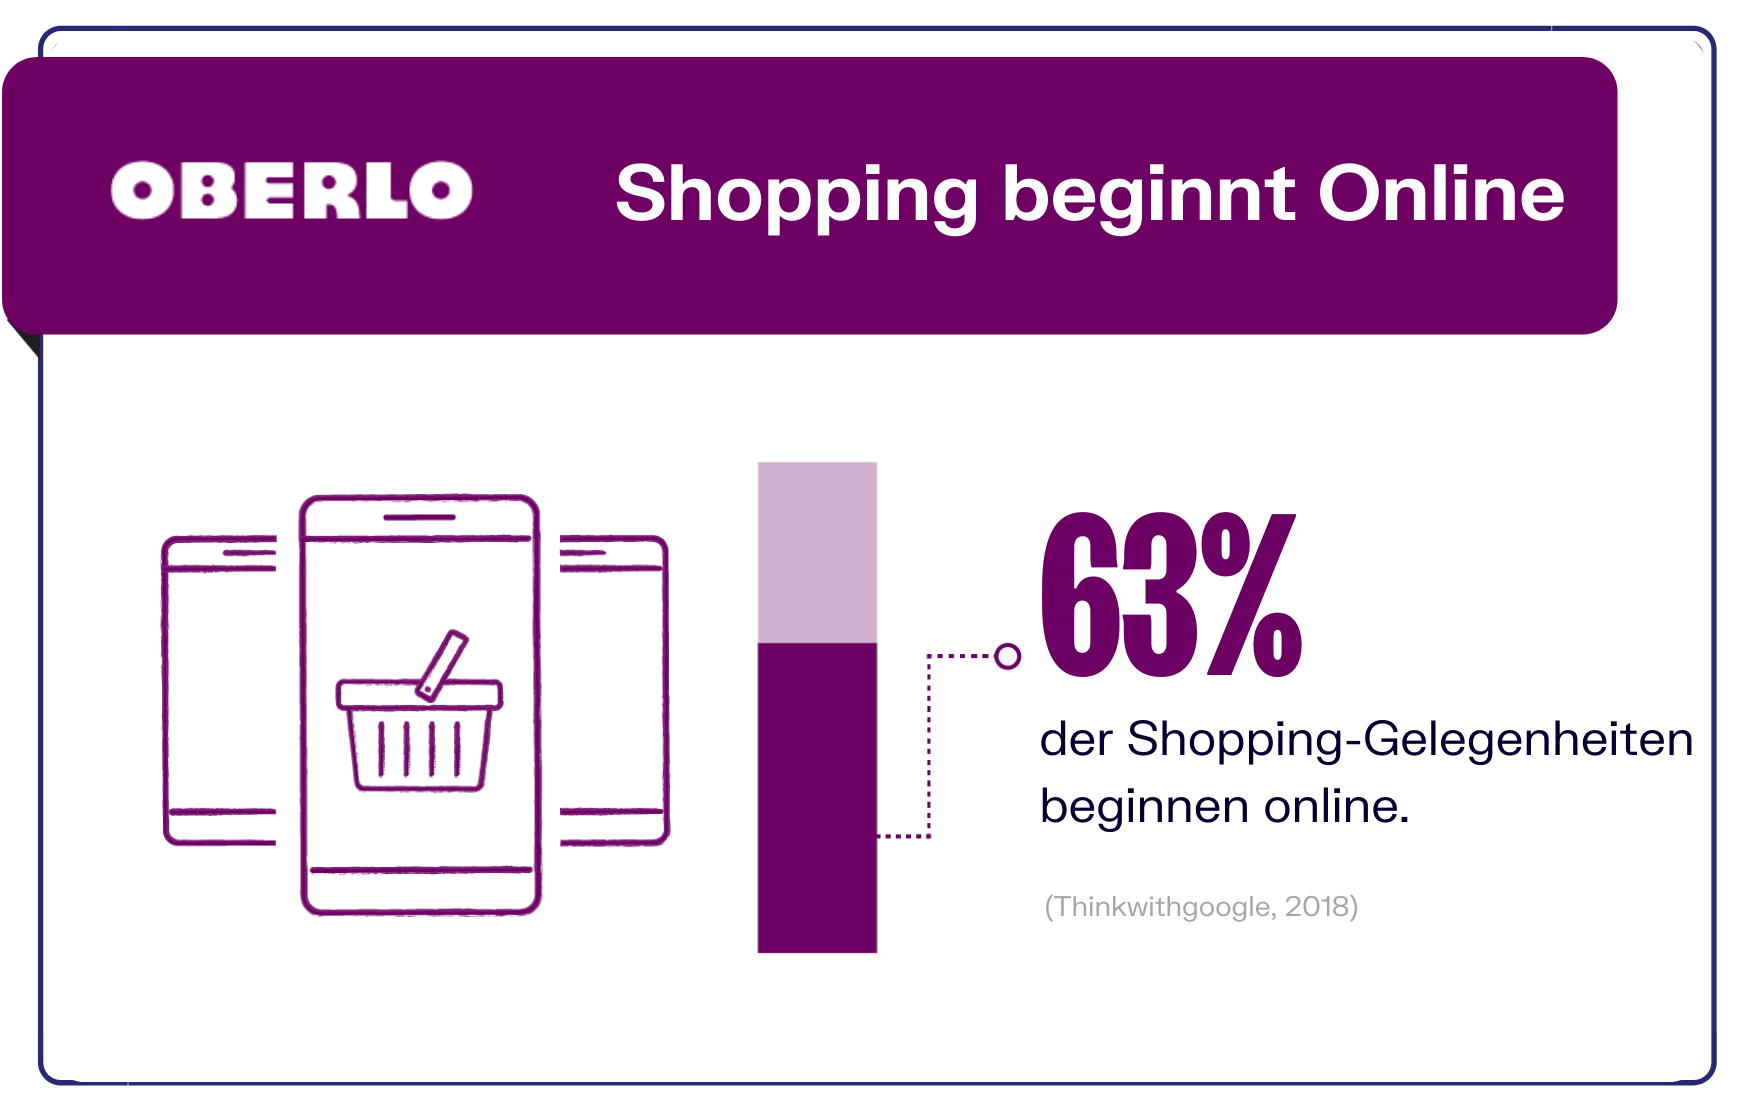 Einkaufen beginnt Online